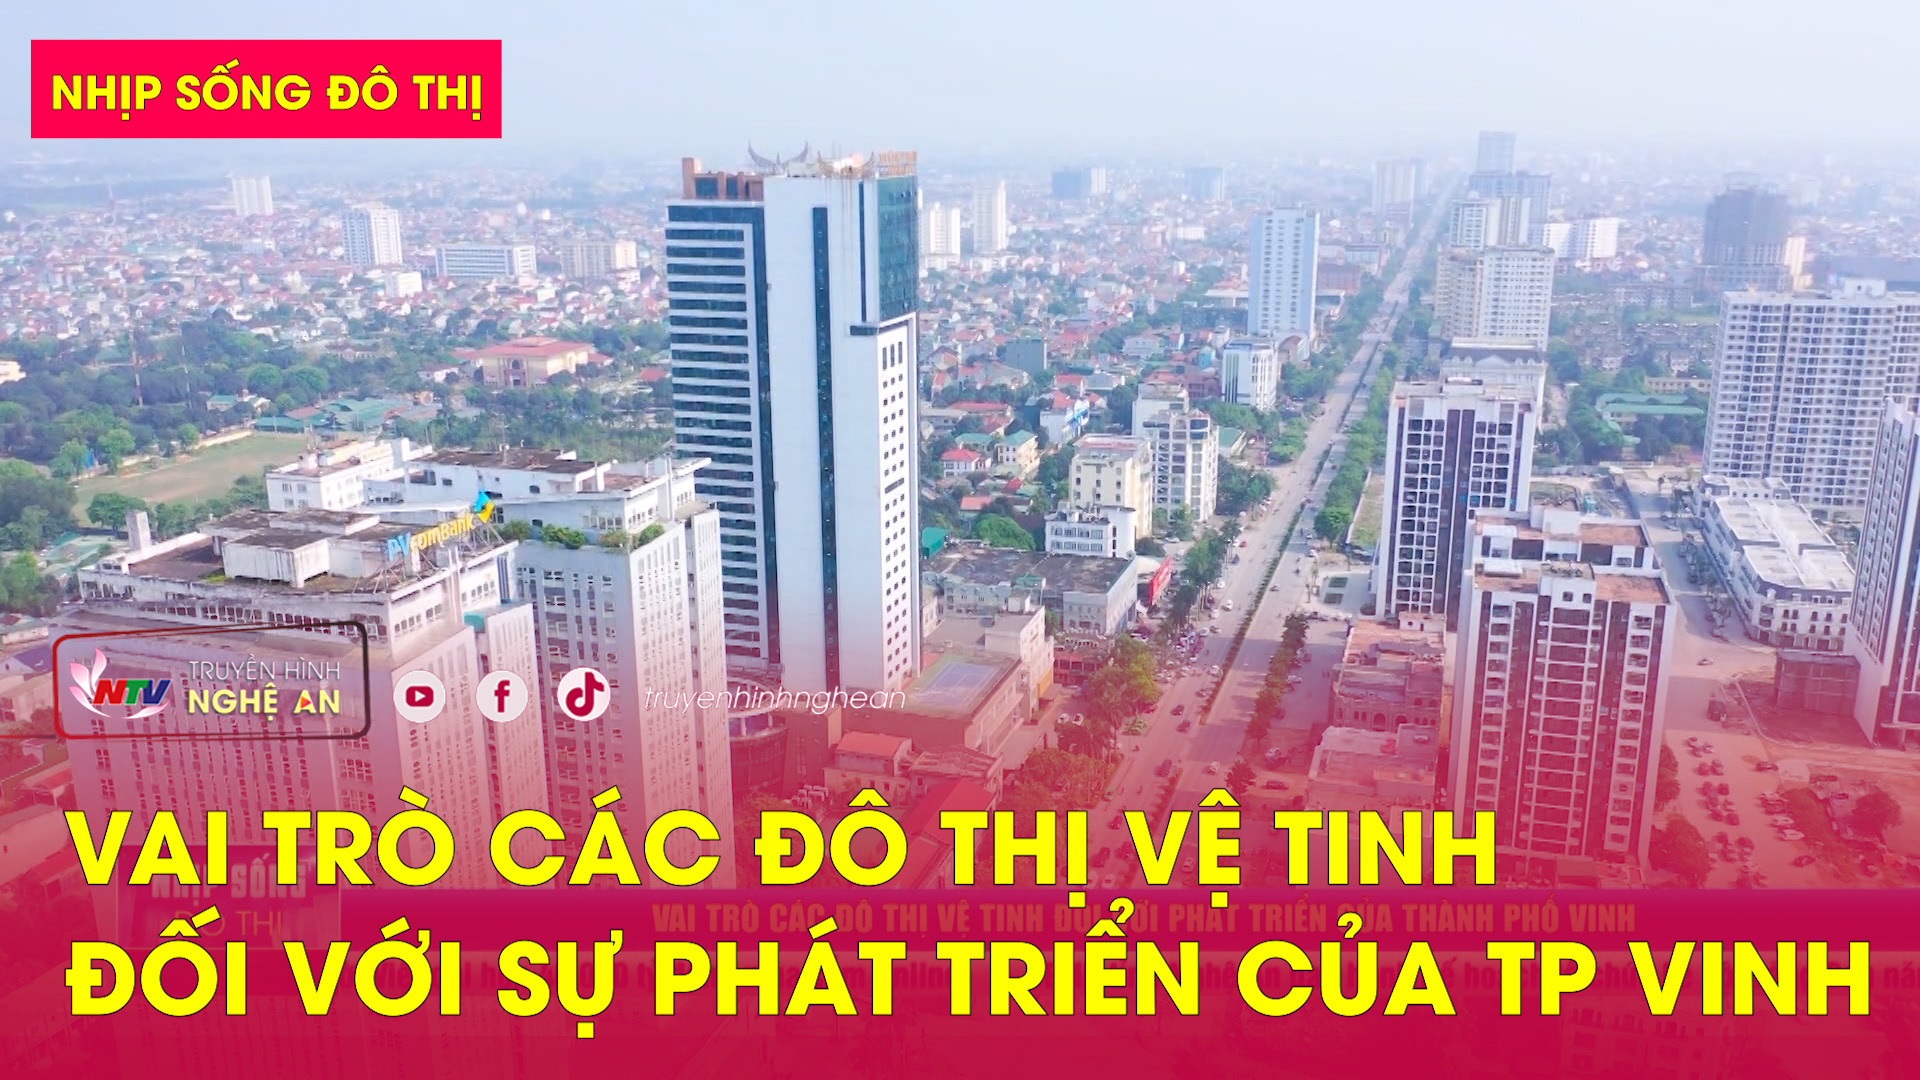 Nhịp sống đô thị: Vai trò các đô thị vệ tinh đối với sự phát triển của Thành phố Vinh